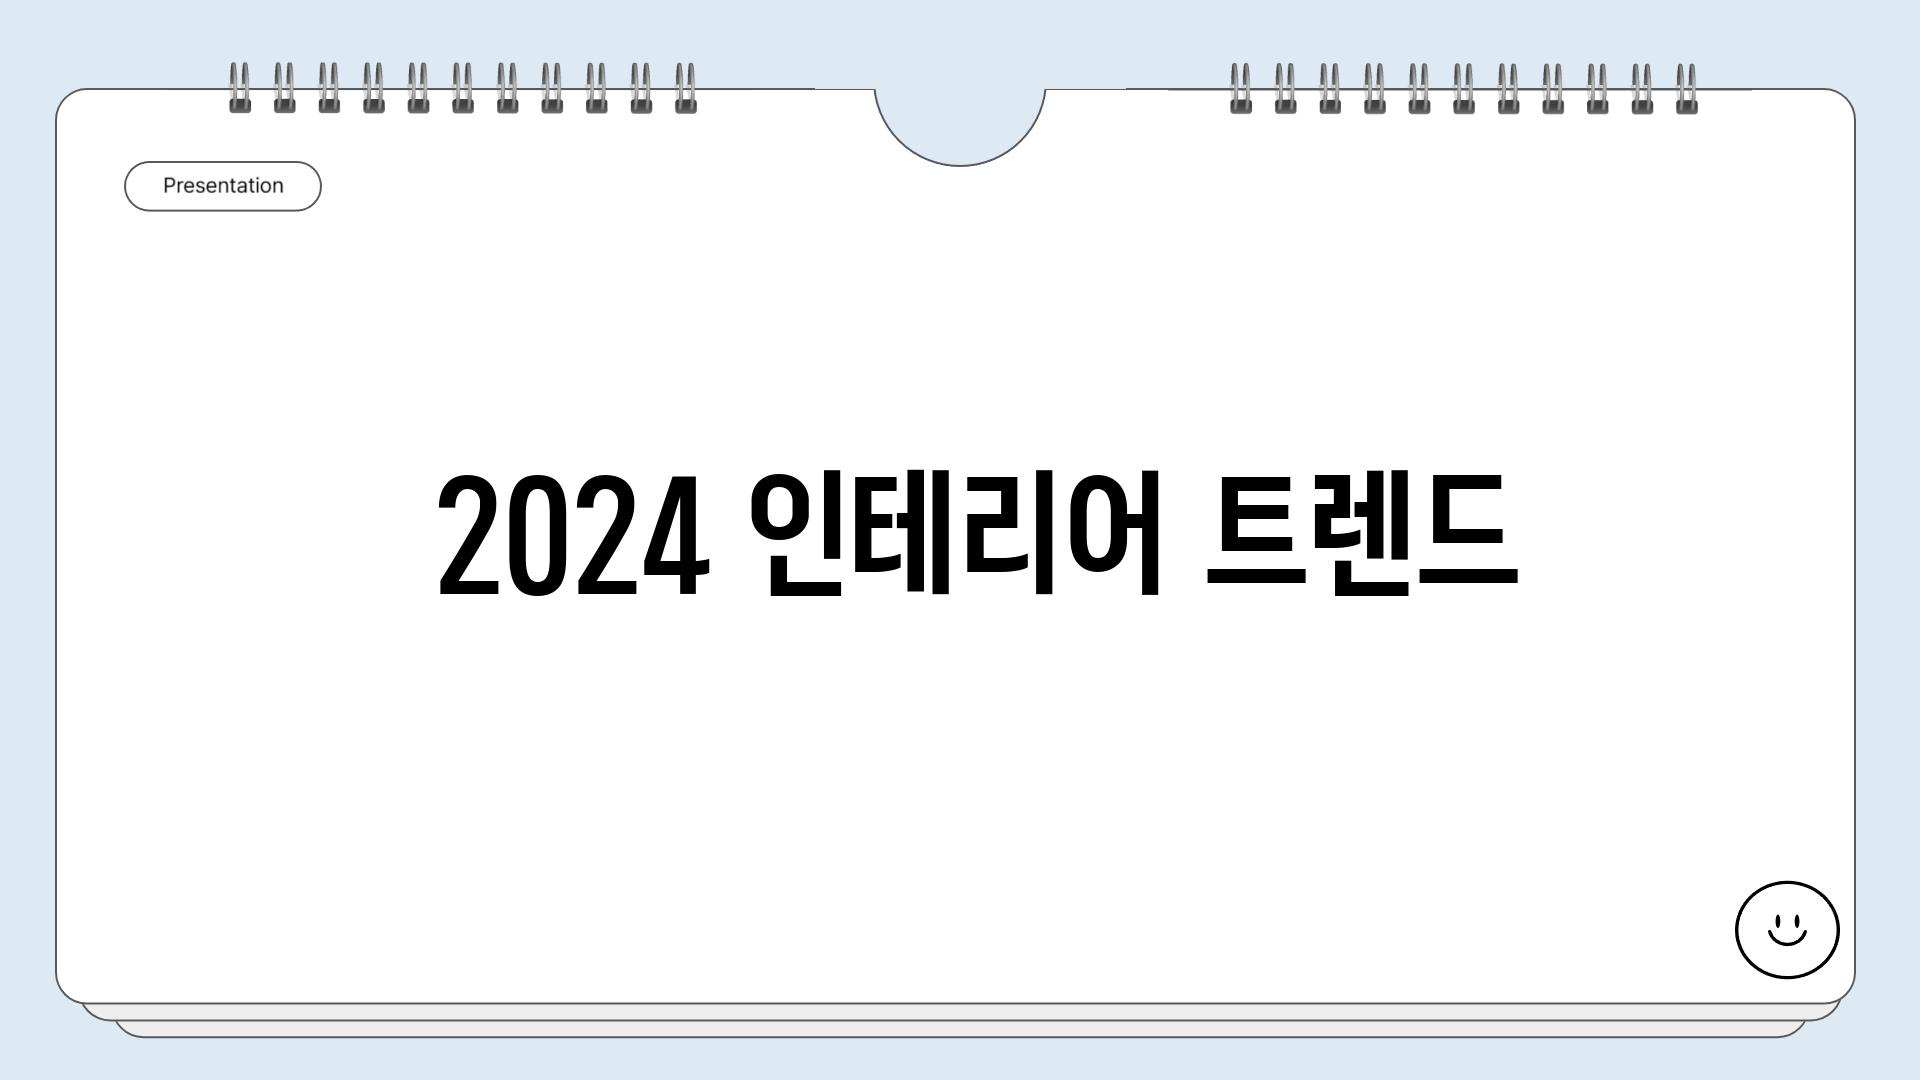  2024 인테리어 트렌드